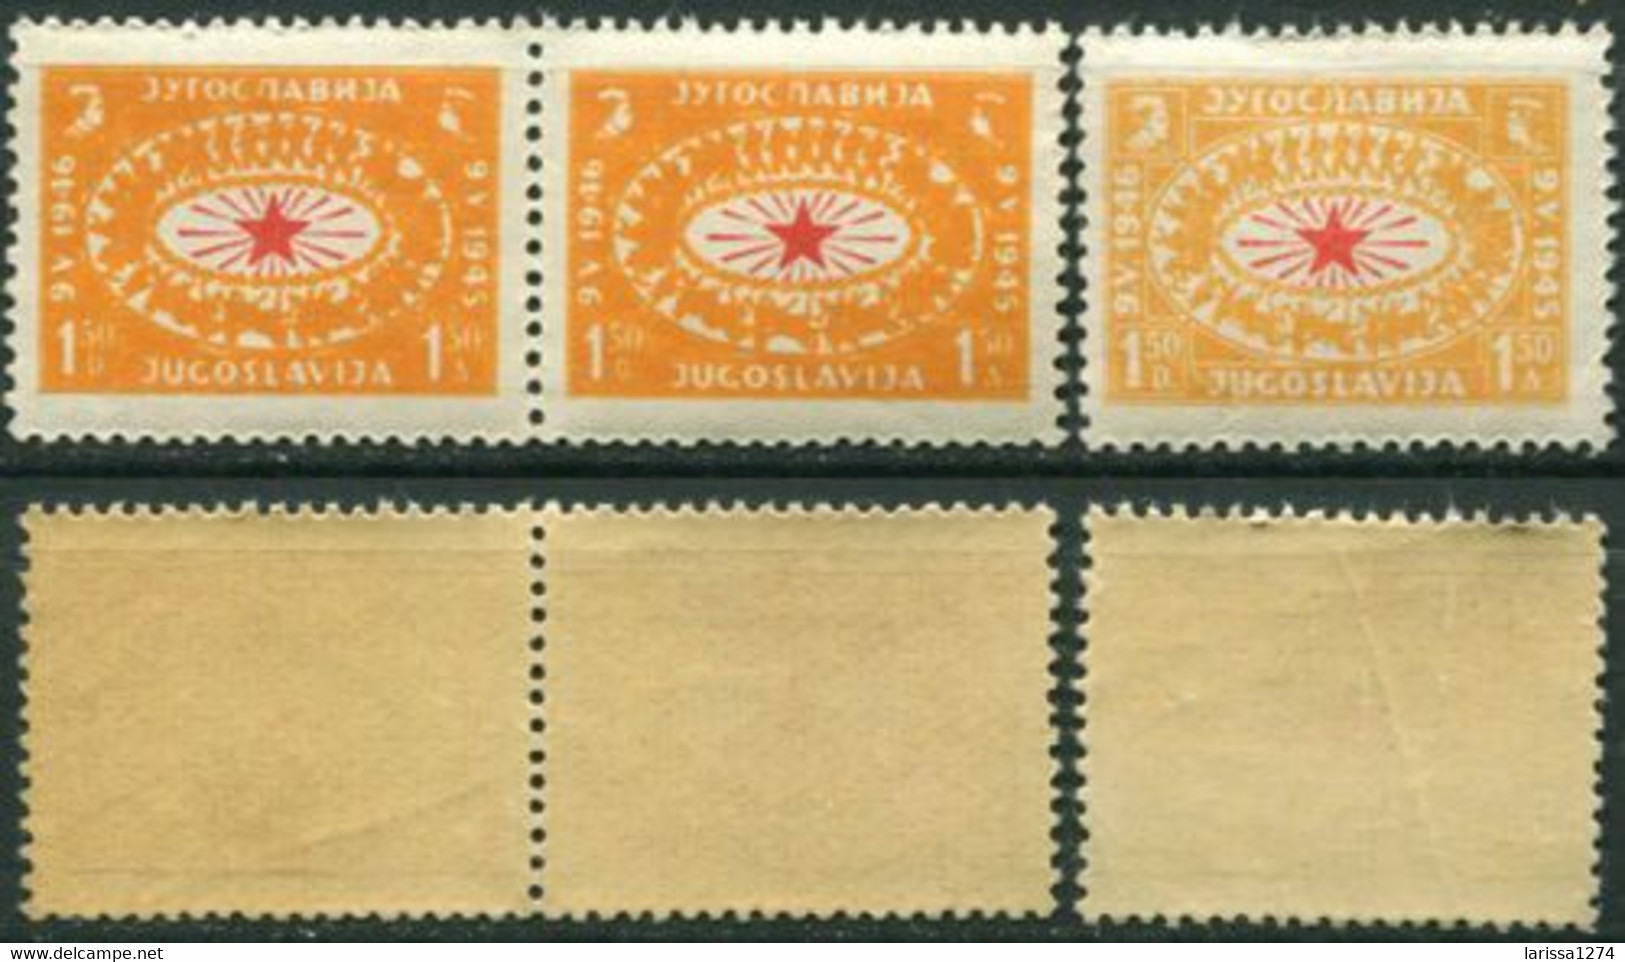 534.Yugoslavia 1946 Victory Day ERROR In Colour First 2 Stamps MNH Michel 494 - Non Dentelés, épreuves & Variétés